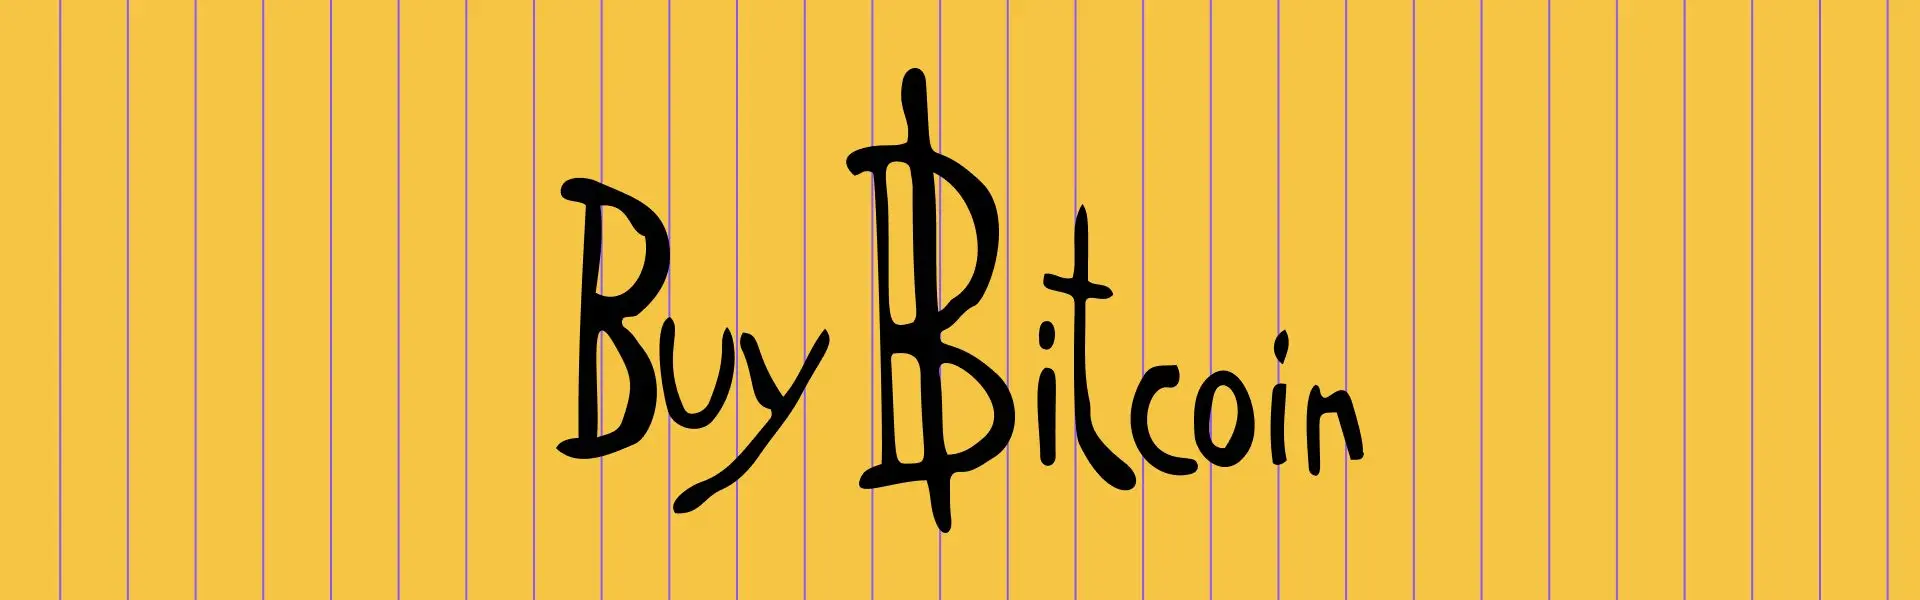 На аукціоні був представлений легендарний блокнот під назвою "Купуйте Bitcoin".